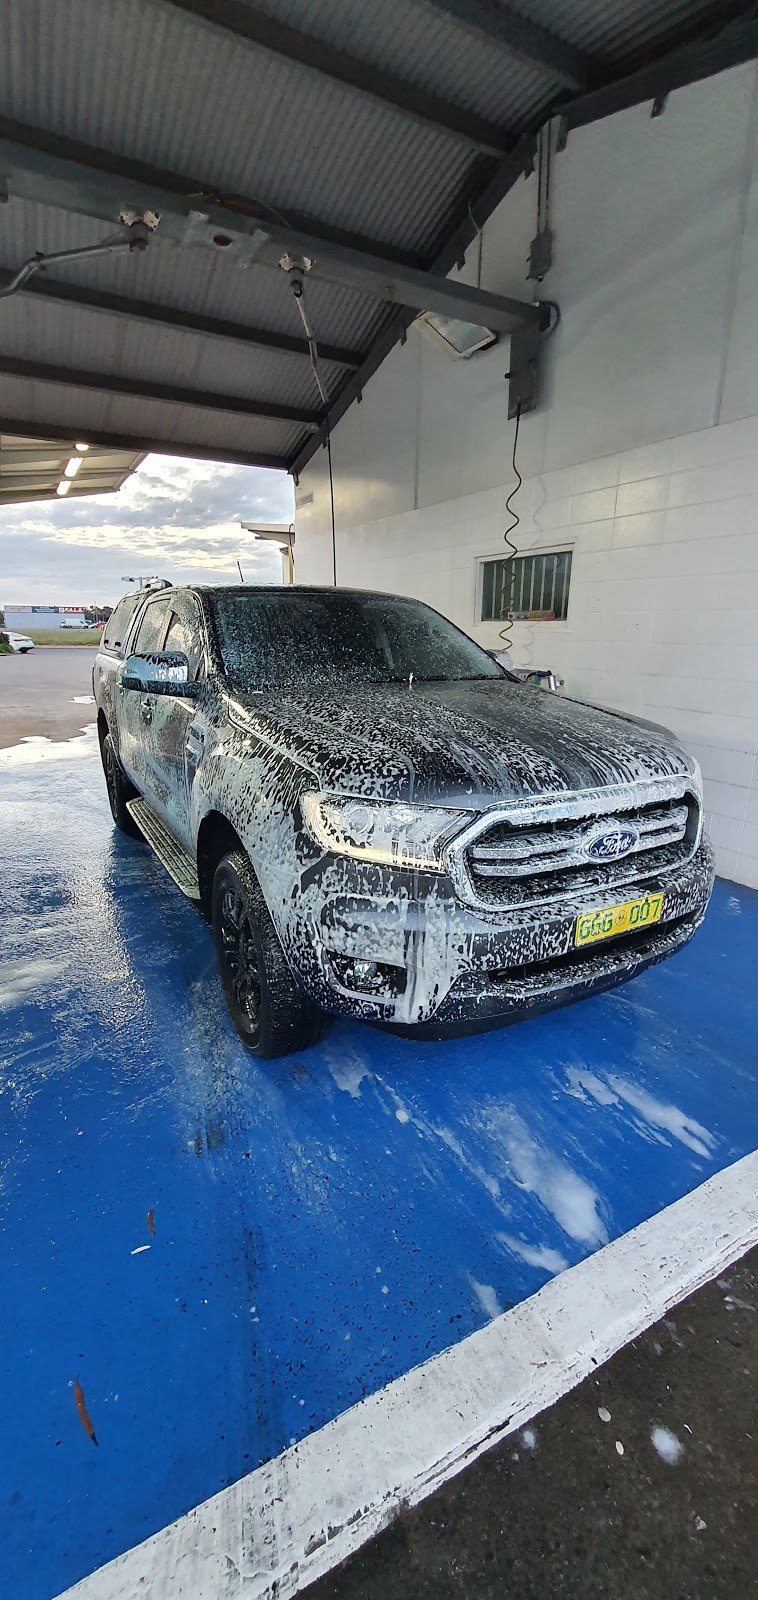 Big Bucket Car Wash | LOT 13 Lawrence Hargrave Way, Parafield SA 5106, Australia | Phone: 0447 010 012